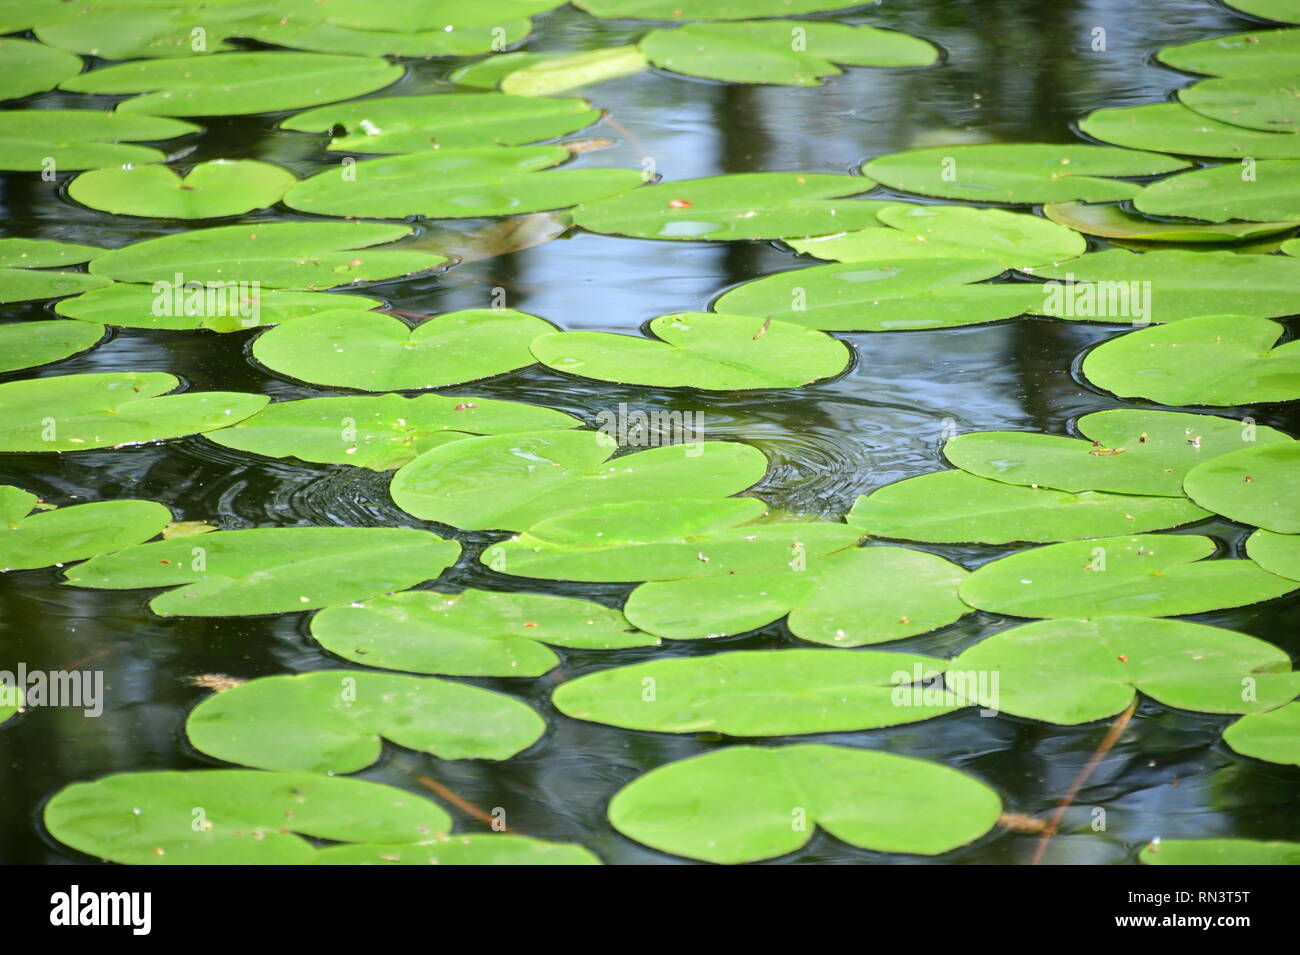 Grüne Schwimmblätter von nymphea alba - Seerosen - auf dem Bodensee Foto Stock